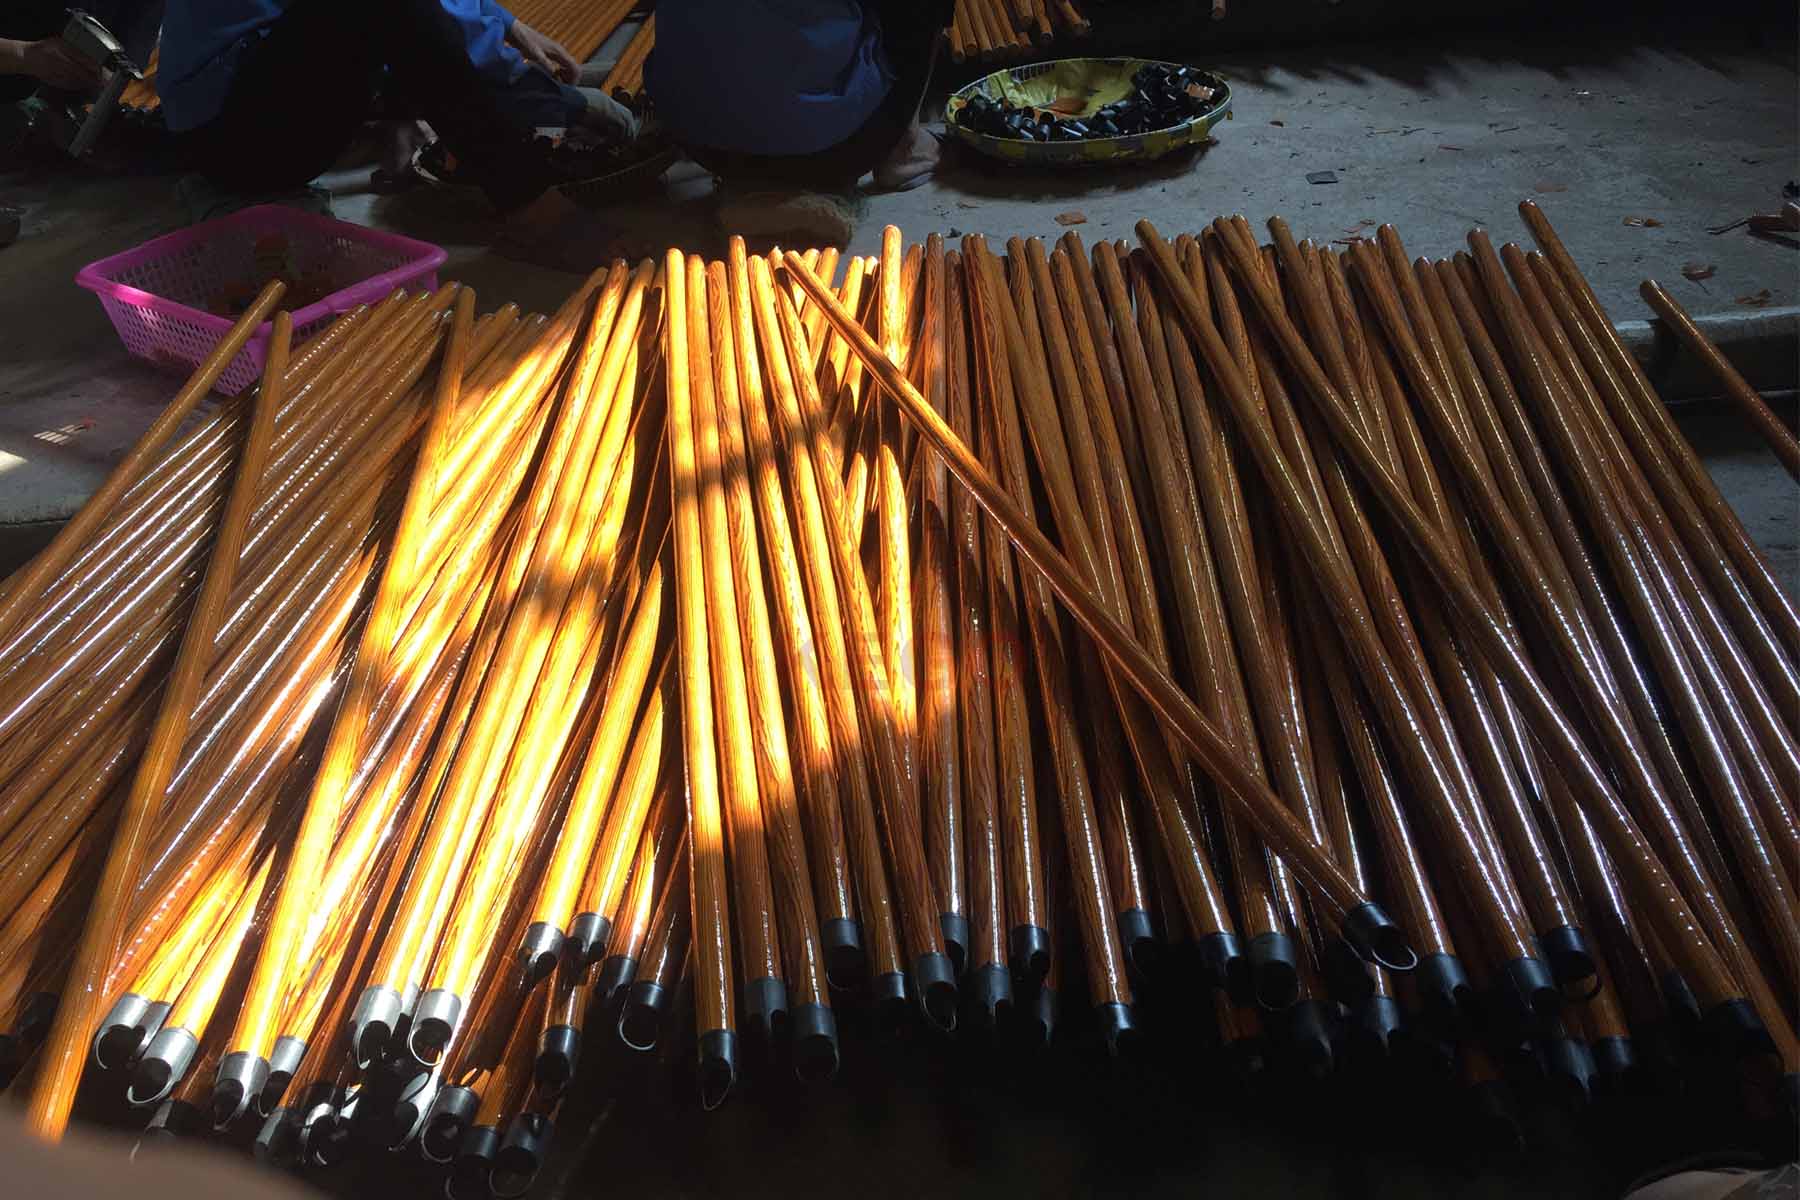 https://kego.com.vn/wp-content/uploads/2015/09/wooden-broom-handle-kego-2.jpg